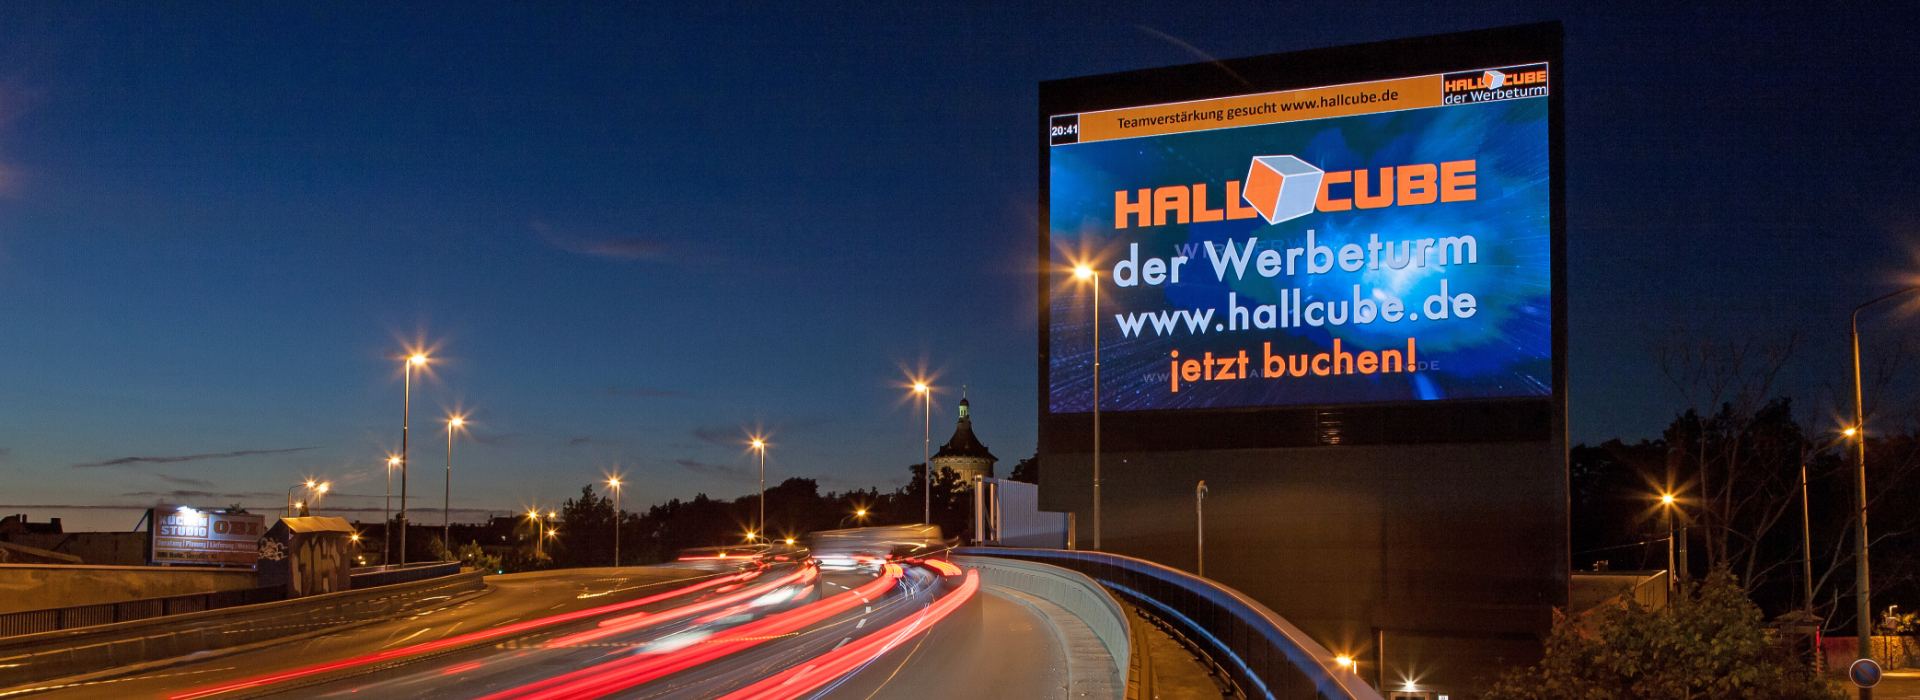 Hallcube, unser Werbeturm in Halle (Bildrechte bei hallcube.de verwendet unter freier Nutzung)